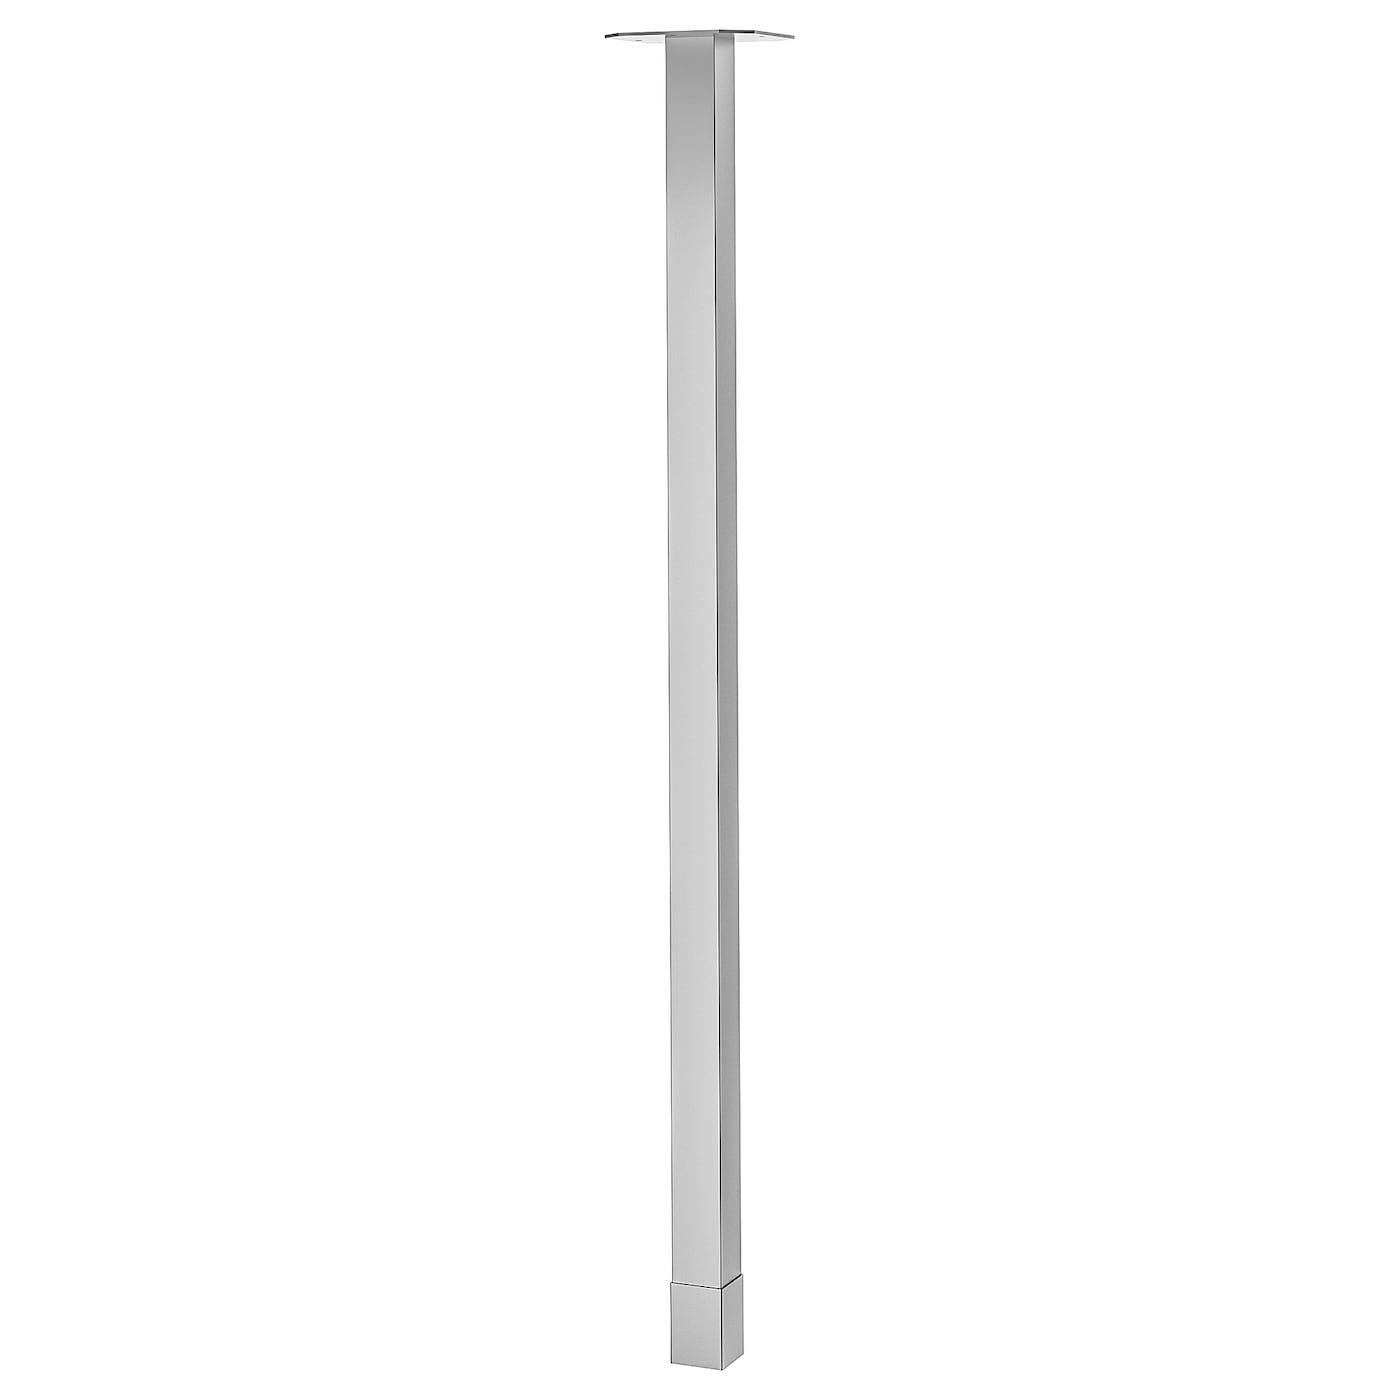 Ножка - IKEA UTBY, 101.5 см, нержавеющая сталь, УТБИ ИКЕА